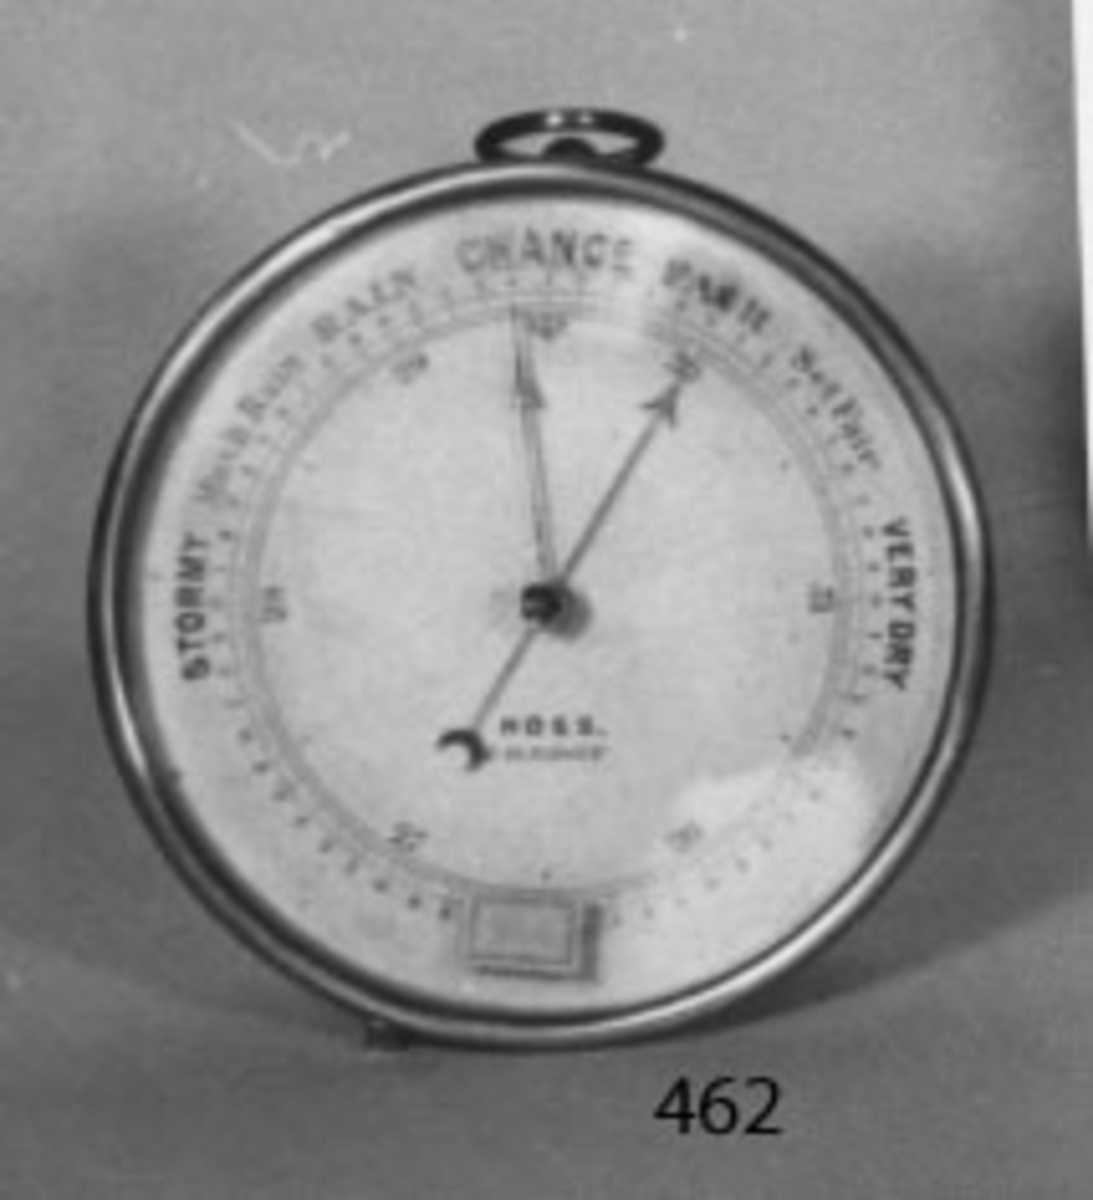 Aneroidbarometer (ej kvicksilver) .
Denna är en vätskefri barometer, där kvicksilvret är ersatt med ett lufttomt metallrör. Tillkom år 1929